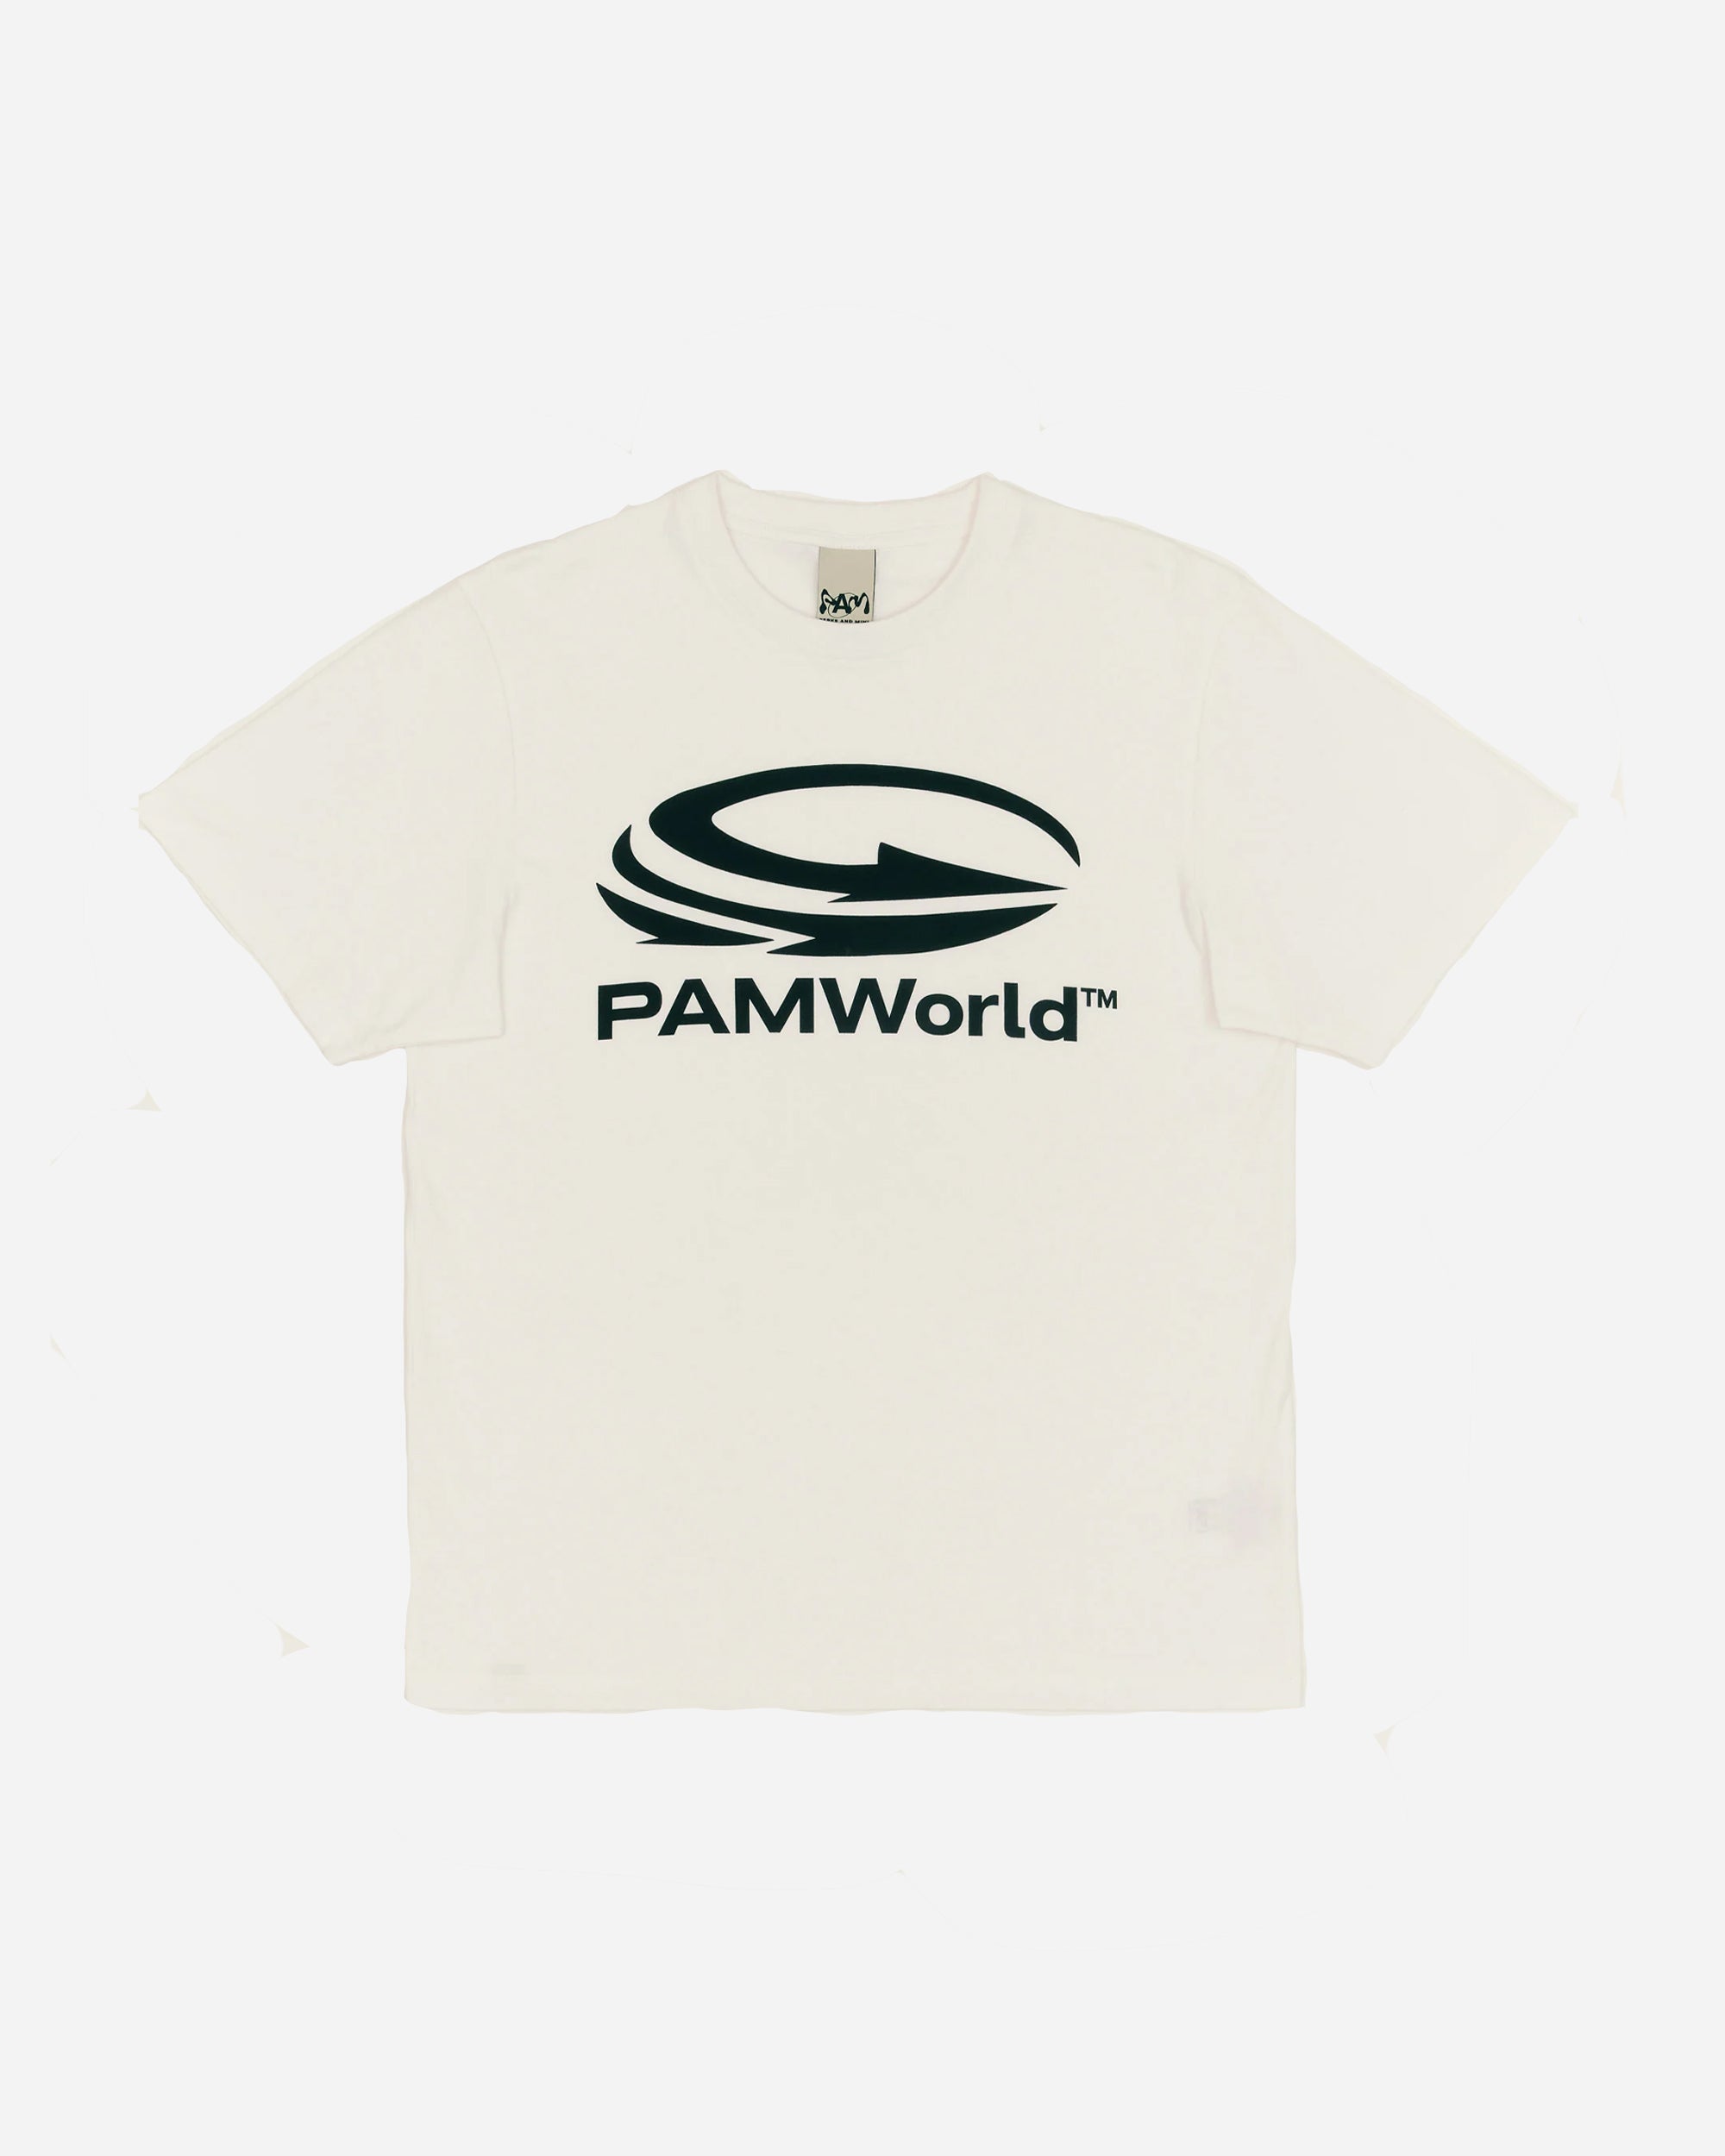 P.A.M. World T-shirt